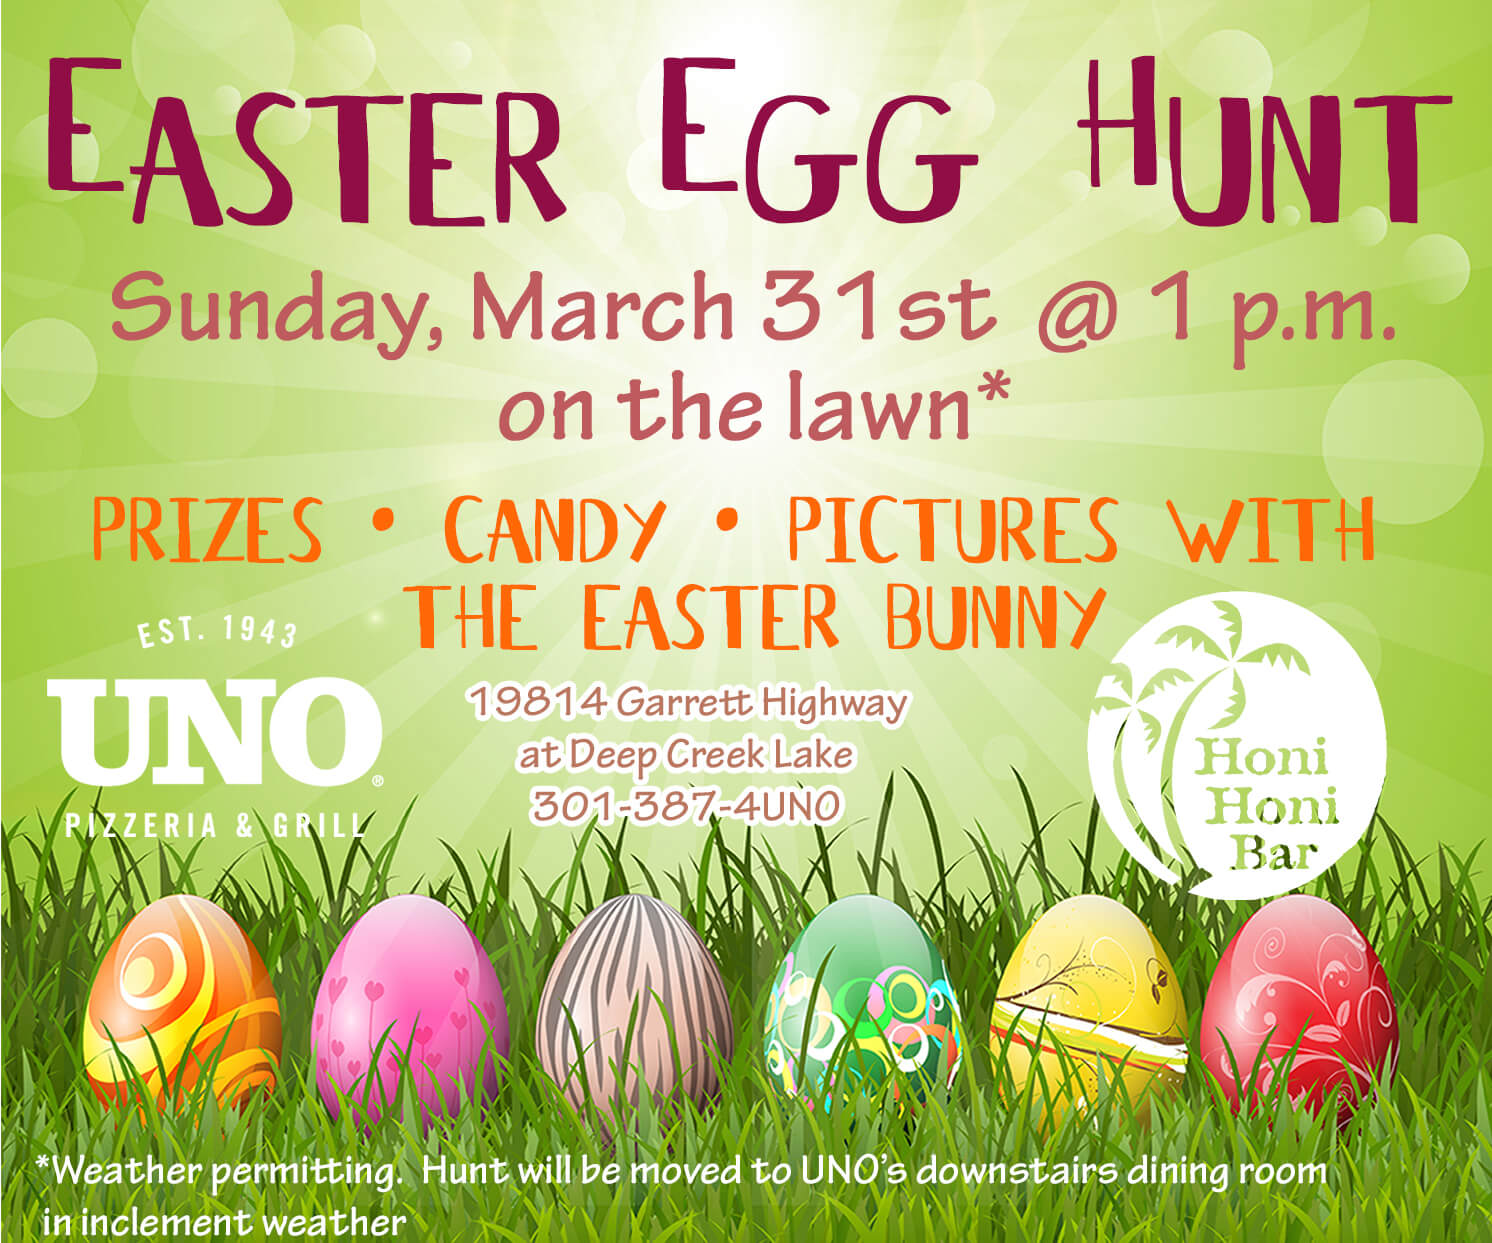 Easter Egg Hunt at Deep Creek Lake, MD